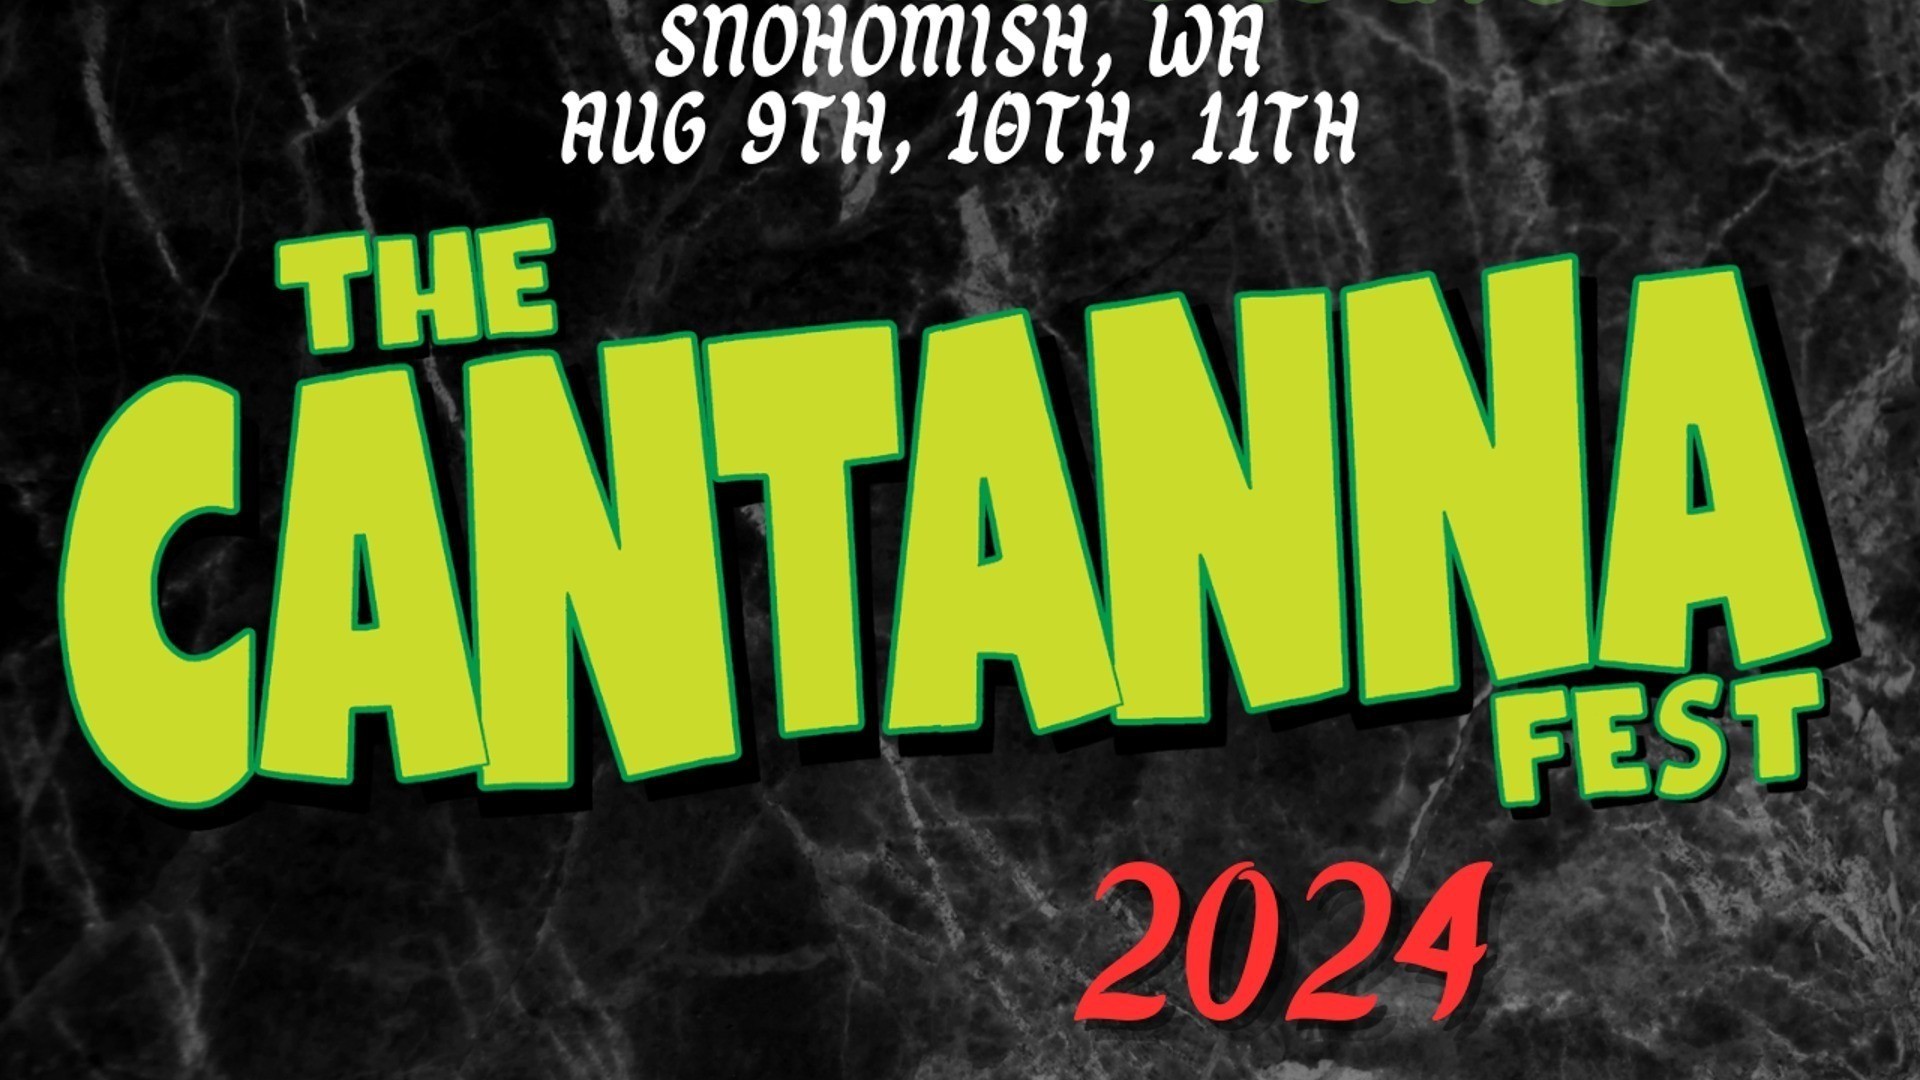 Cantanna Festival The Cantanna Fest 2024